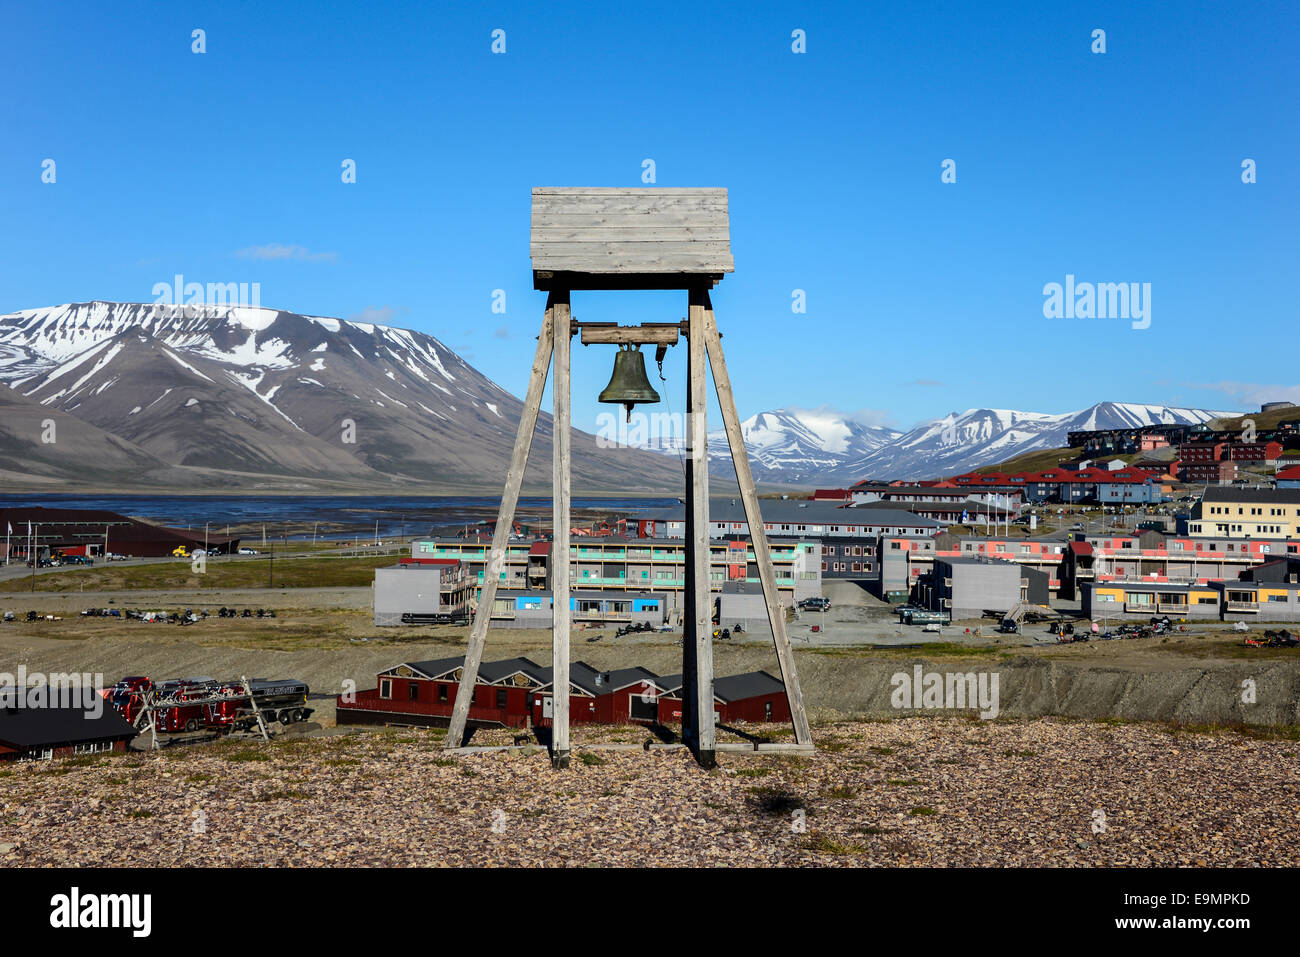 La ville de Longyearbyen à Svalbard, Spitzberg Banque D'Images